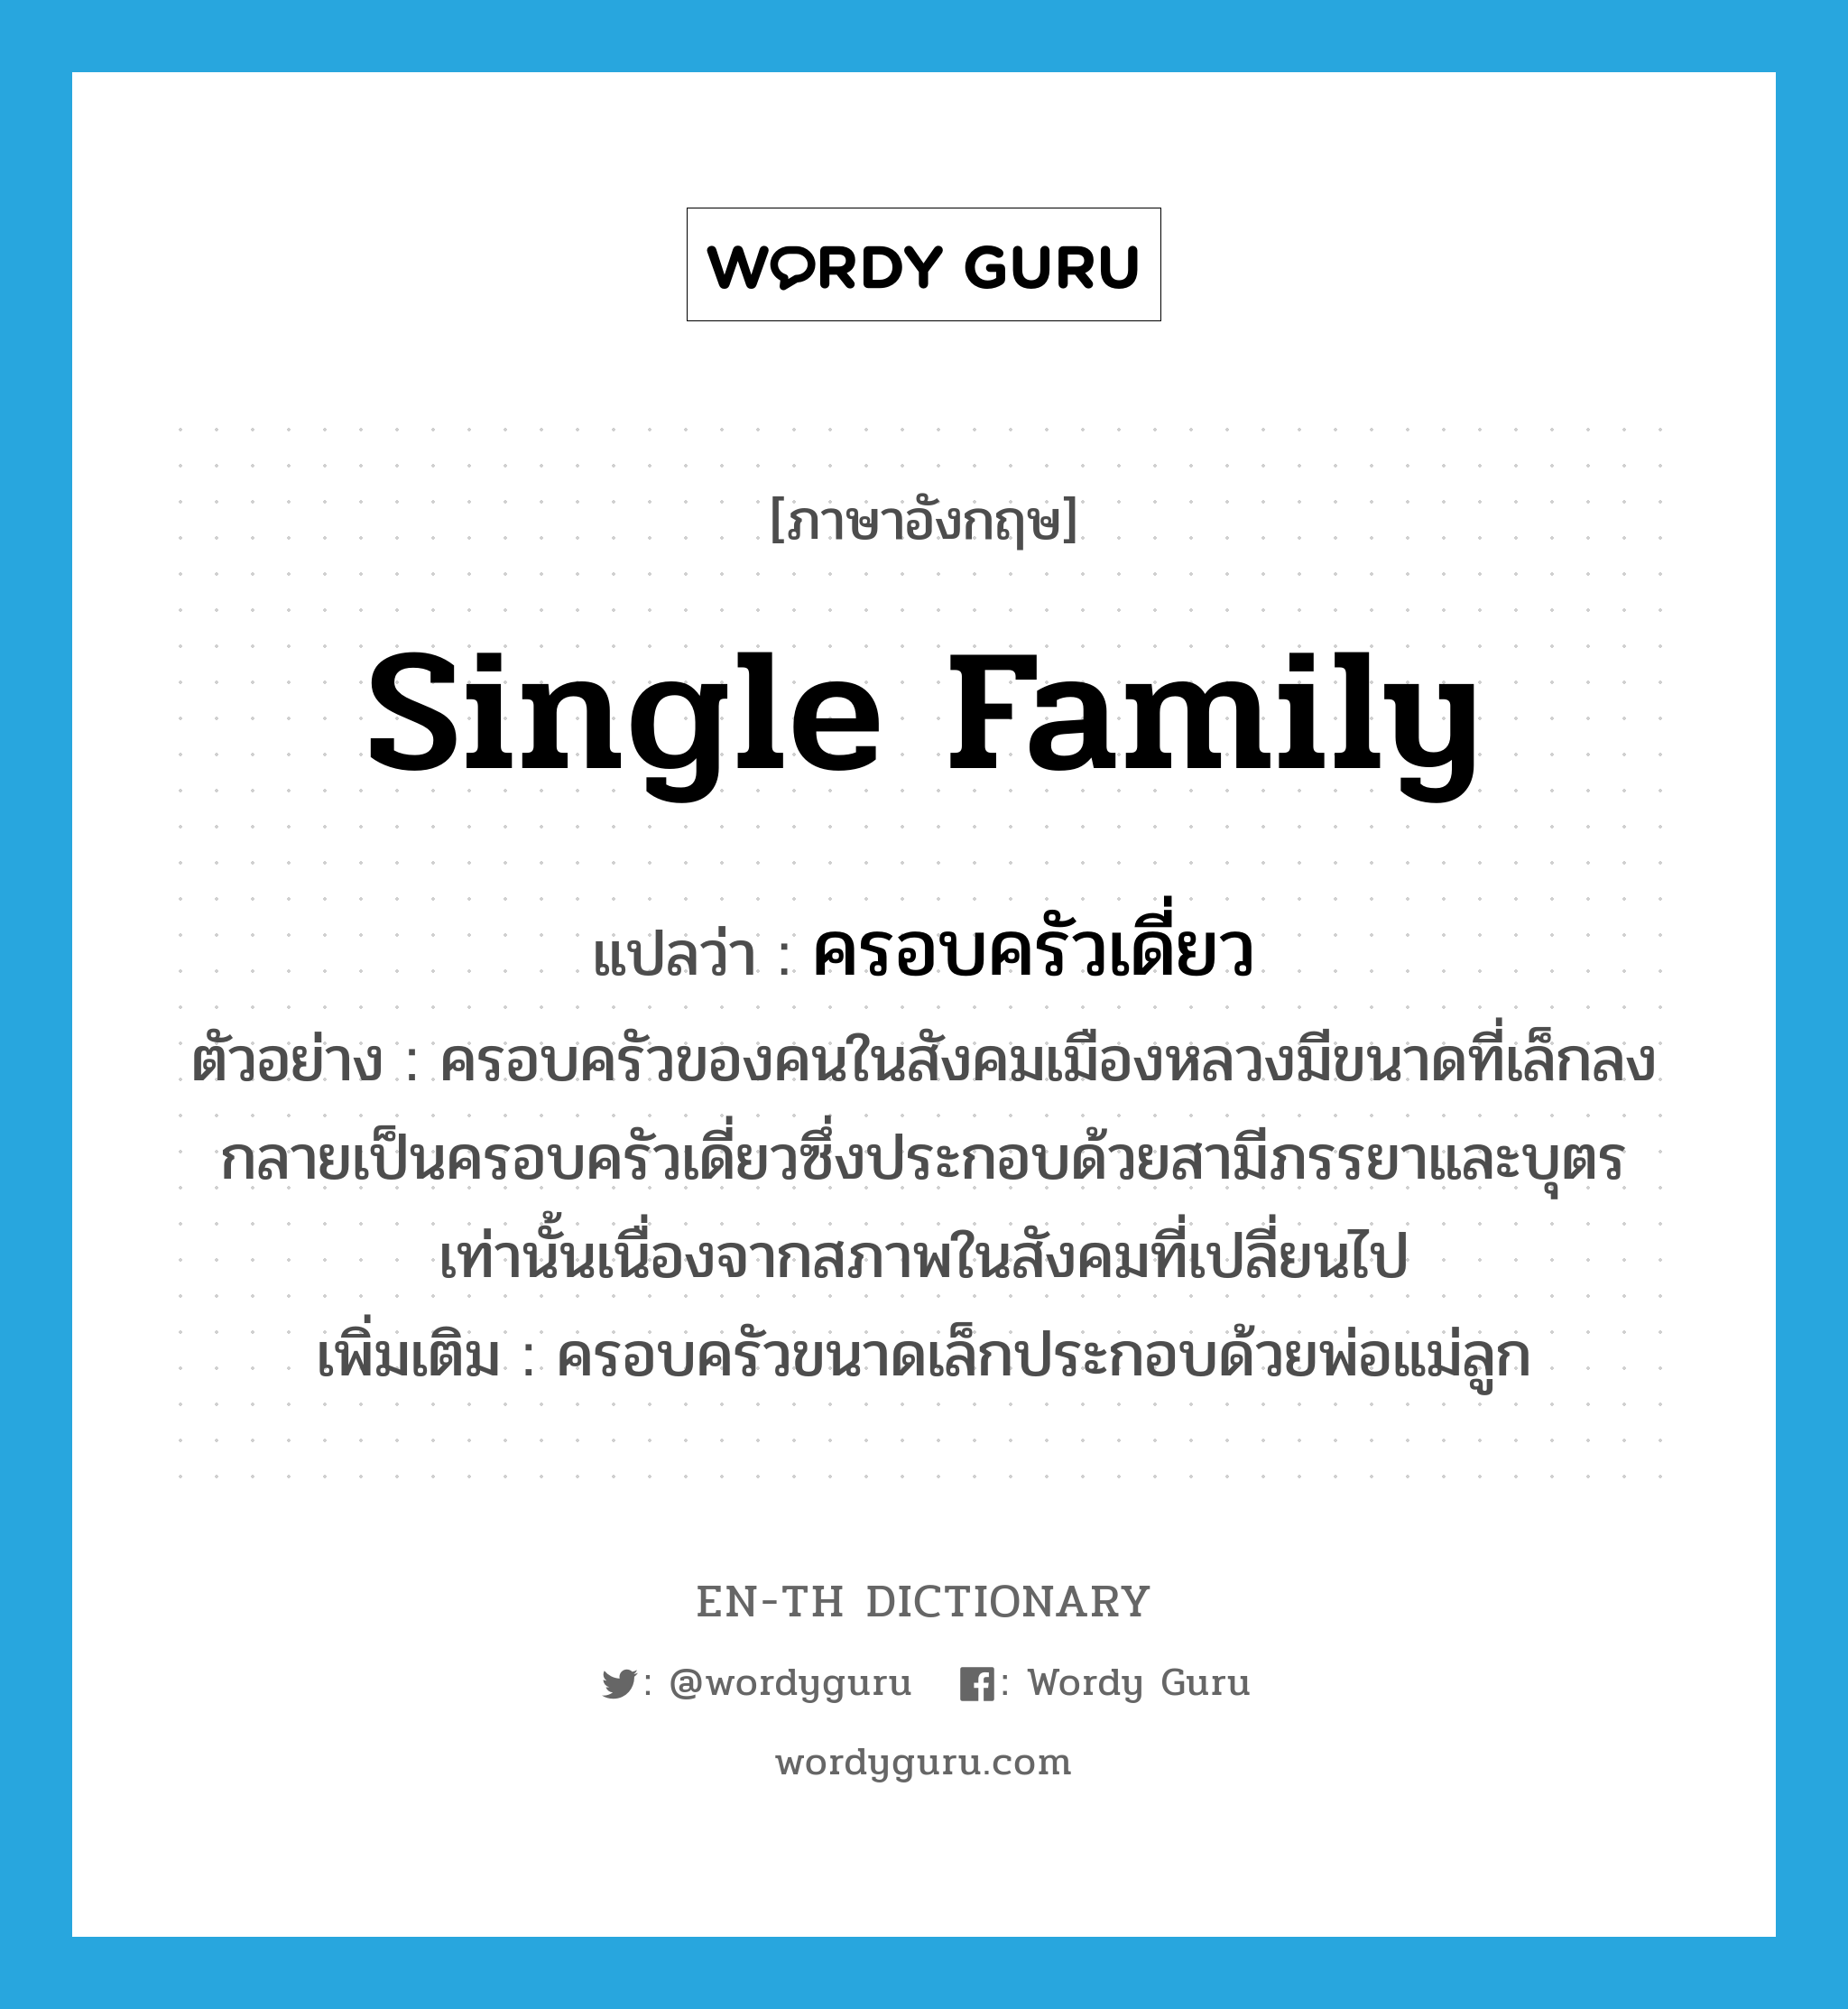 single family แปลว่า?, คำศัพท์ภาษาอังกฤษ single family แปลว่า ครอบครัวเดี่ยว ประเภท N ตัวอย่าง ครอบครัวของคนในสังคมเมืองหลวงมีขนาดที่เล็กลงกลายเป็นครอบครัวเดี่ยวซึ่งประกอบด้วยสามีภรรยาและบุตรเท่านั้นเนื่องจากสภาพในสังคมที่เปลี่ยนไป เพิ่มเติม ครอบครัวขนาดเล็กประกอบด้วยพ่อแม่ลูก หมวด N